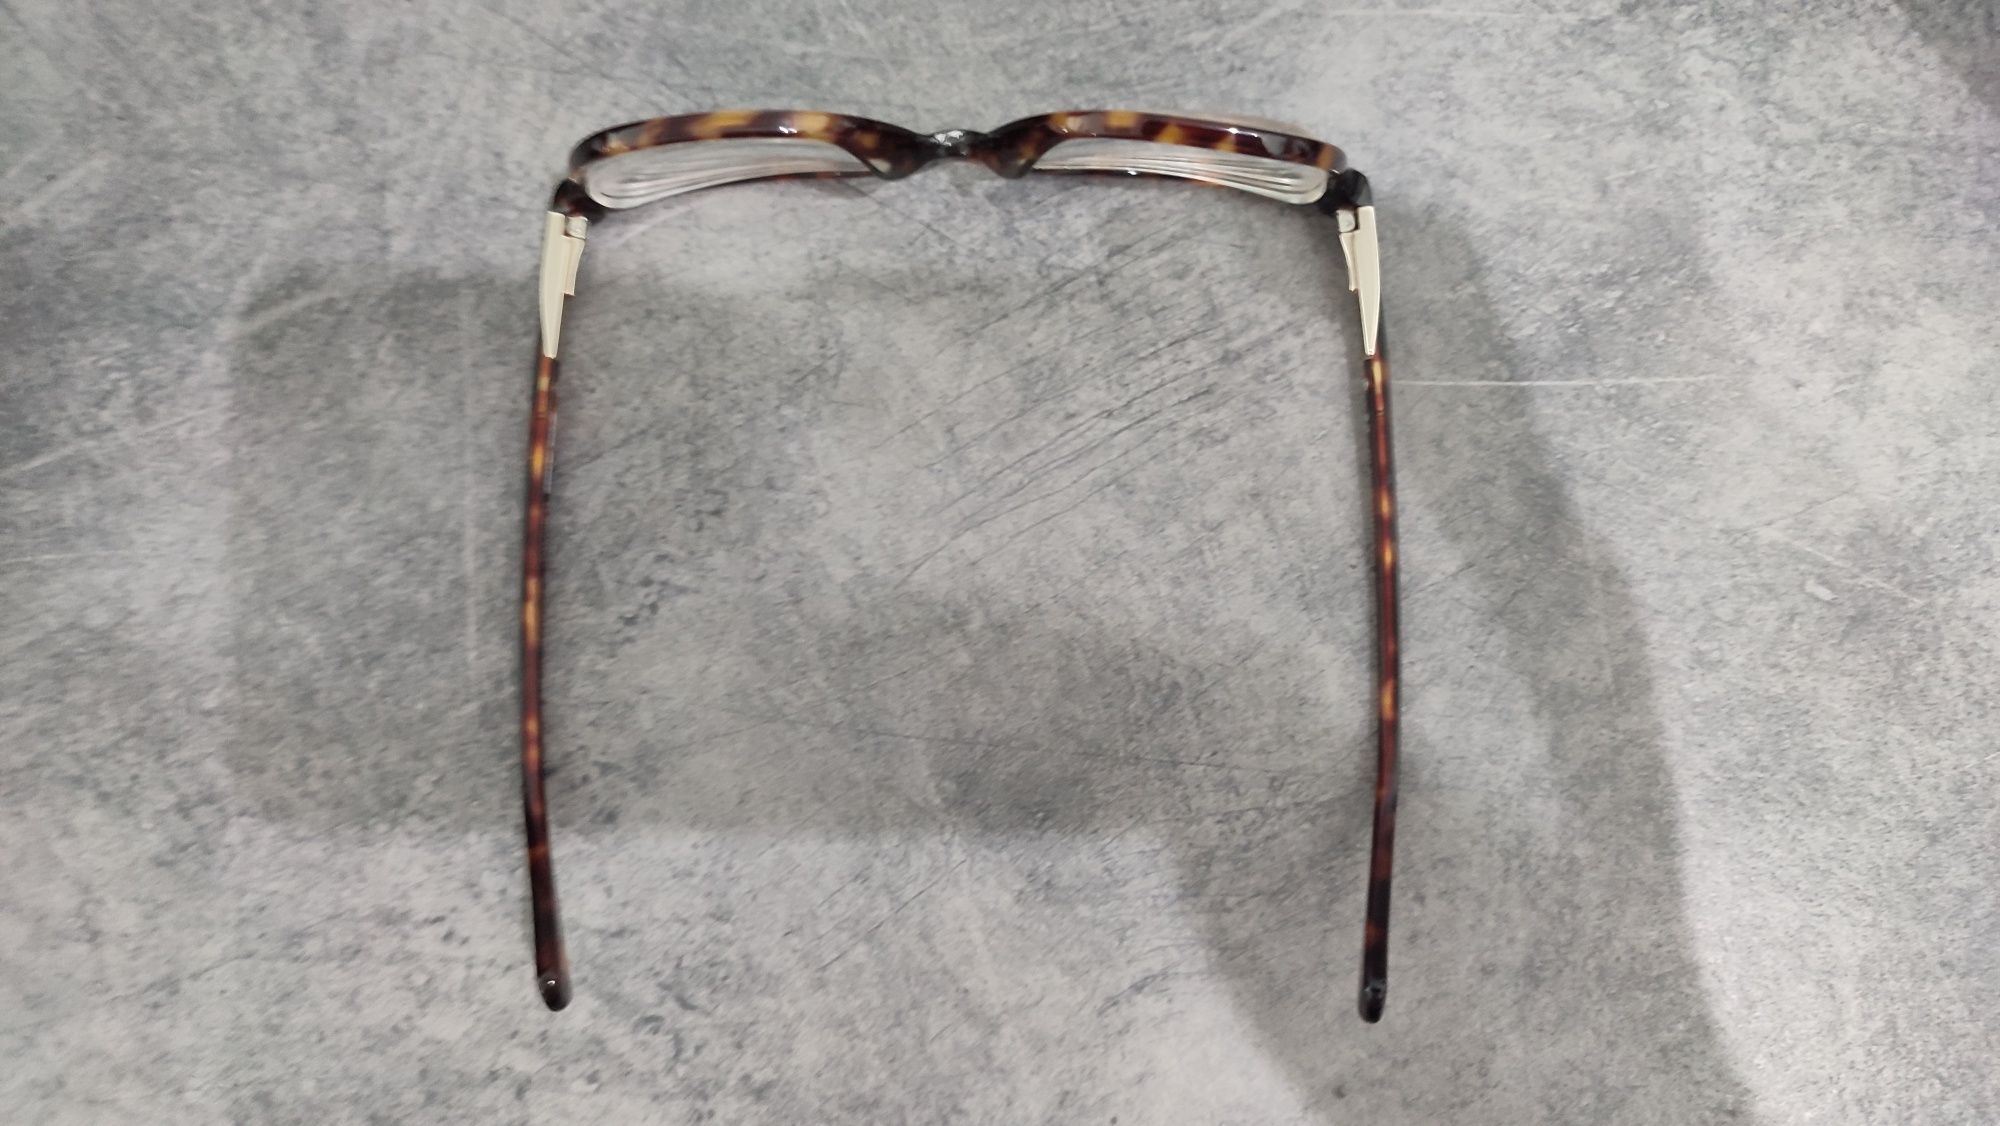 Oprawki okulary korekcyjne Solano damskie